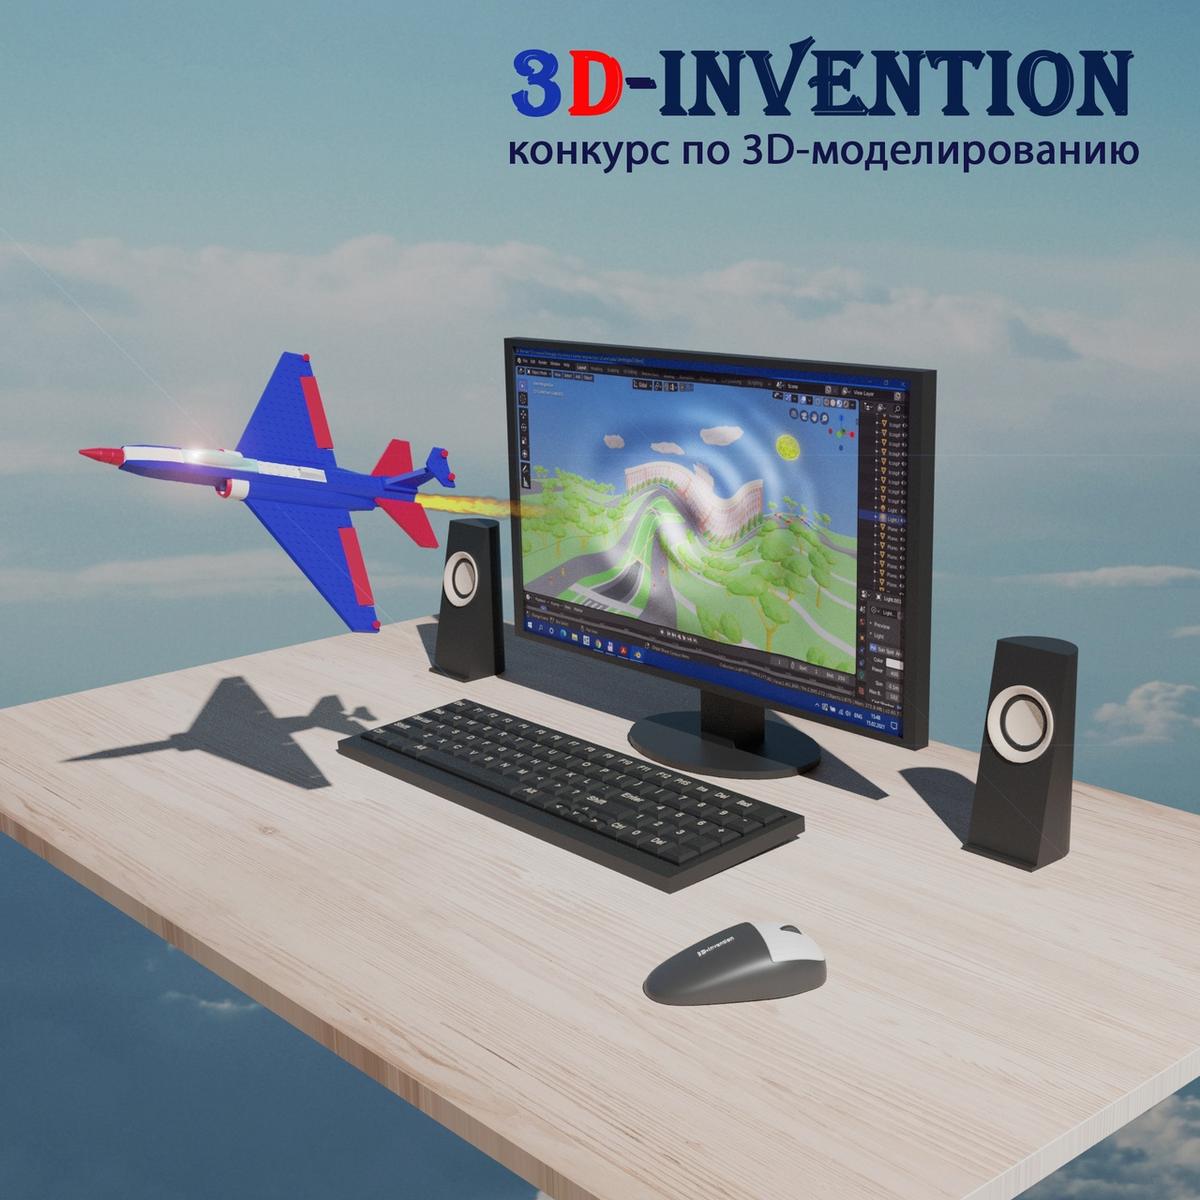 Международный конкурс проектов по 3D-моделированию «3D Invention» 2021